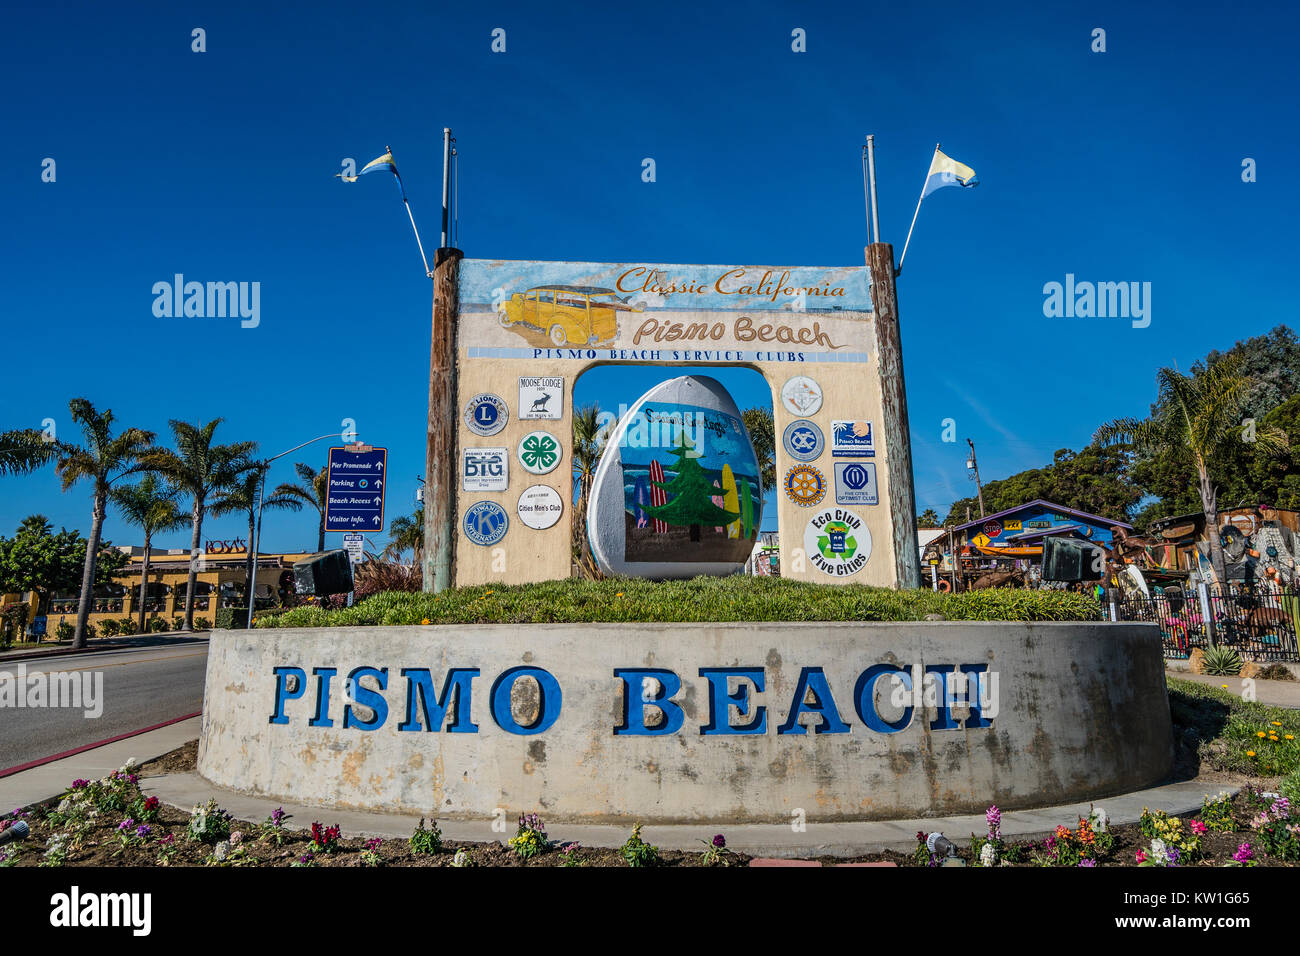 Riesige konkrete Clam am Pismo Beach, CA. Es gibt drei riesige konkrete Muschel Statuen in der Stadt, für seine Muscheln bekannt. Pismo Beach ist die Heimat der actu Stockfoto